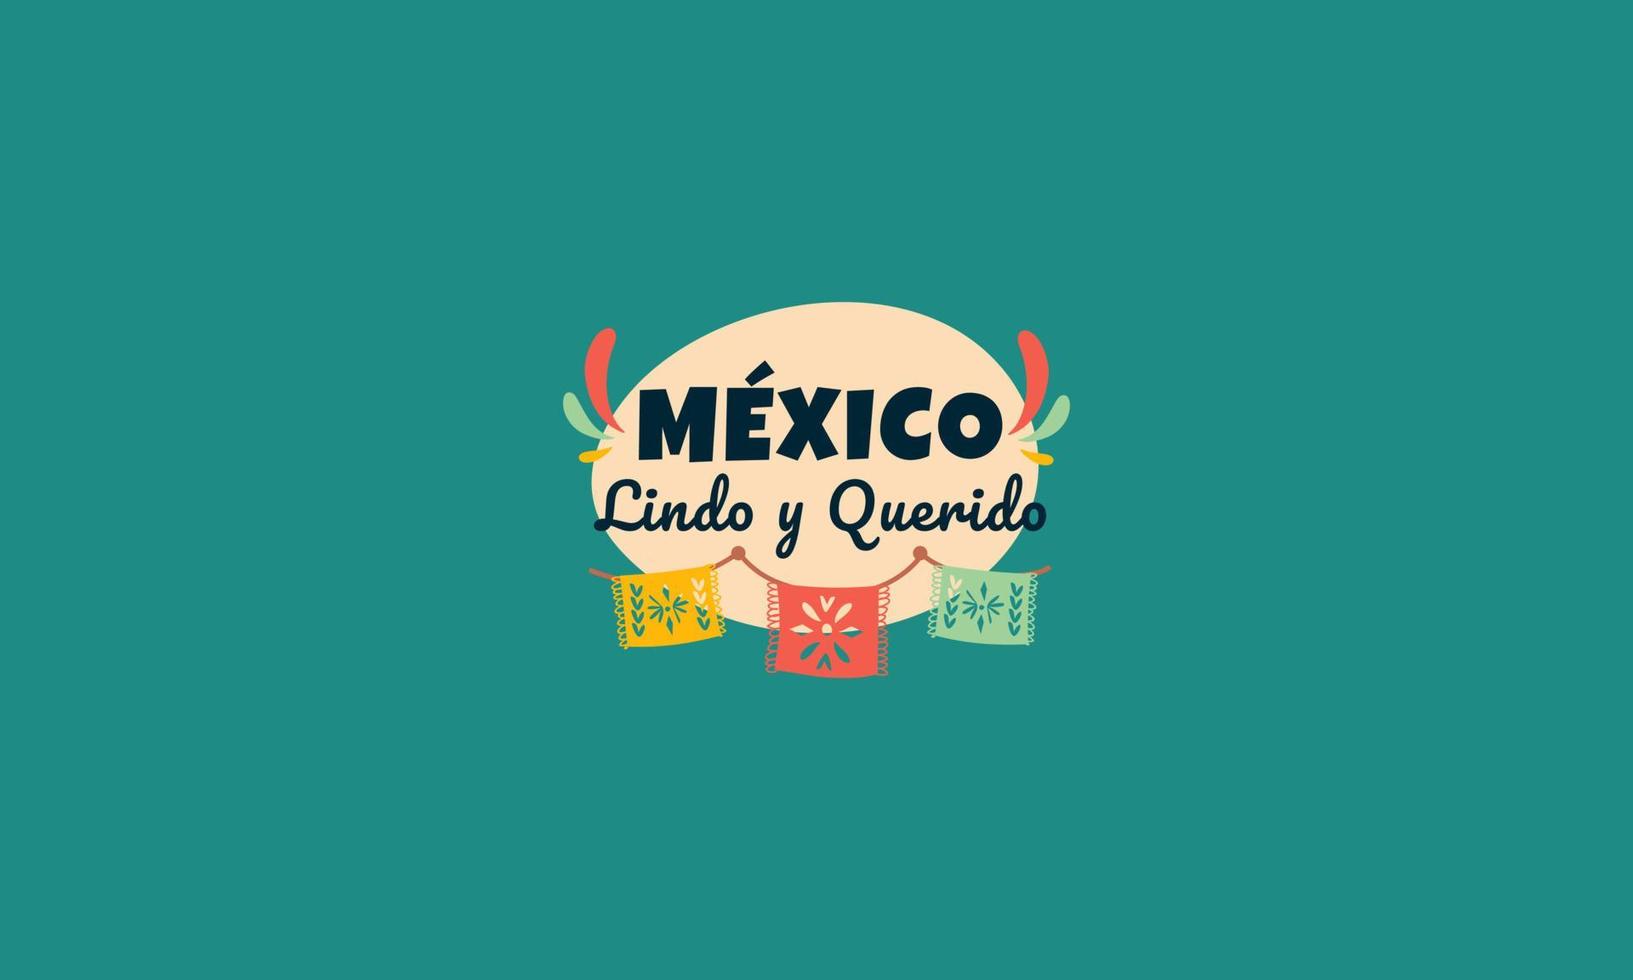 Messico indipendente giorno vettore piatto design